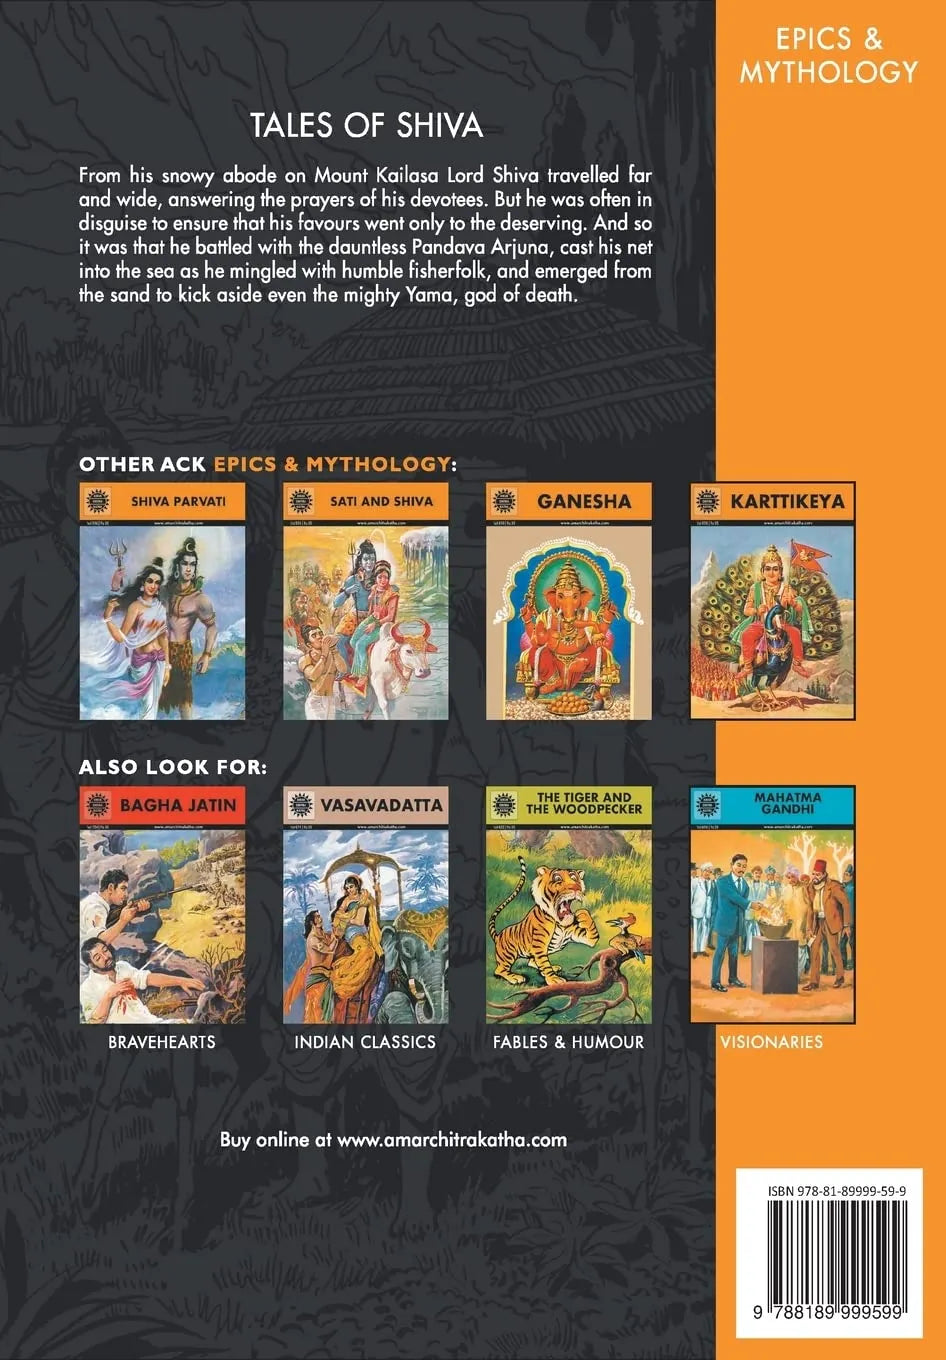 Amar Chitra Katha - Tales of Shiva the mighty lord of kailasa